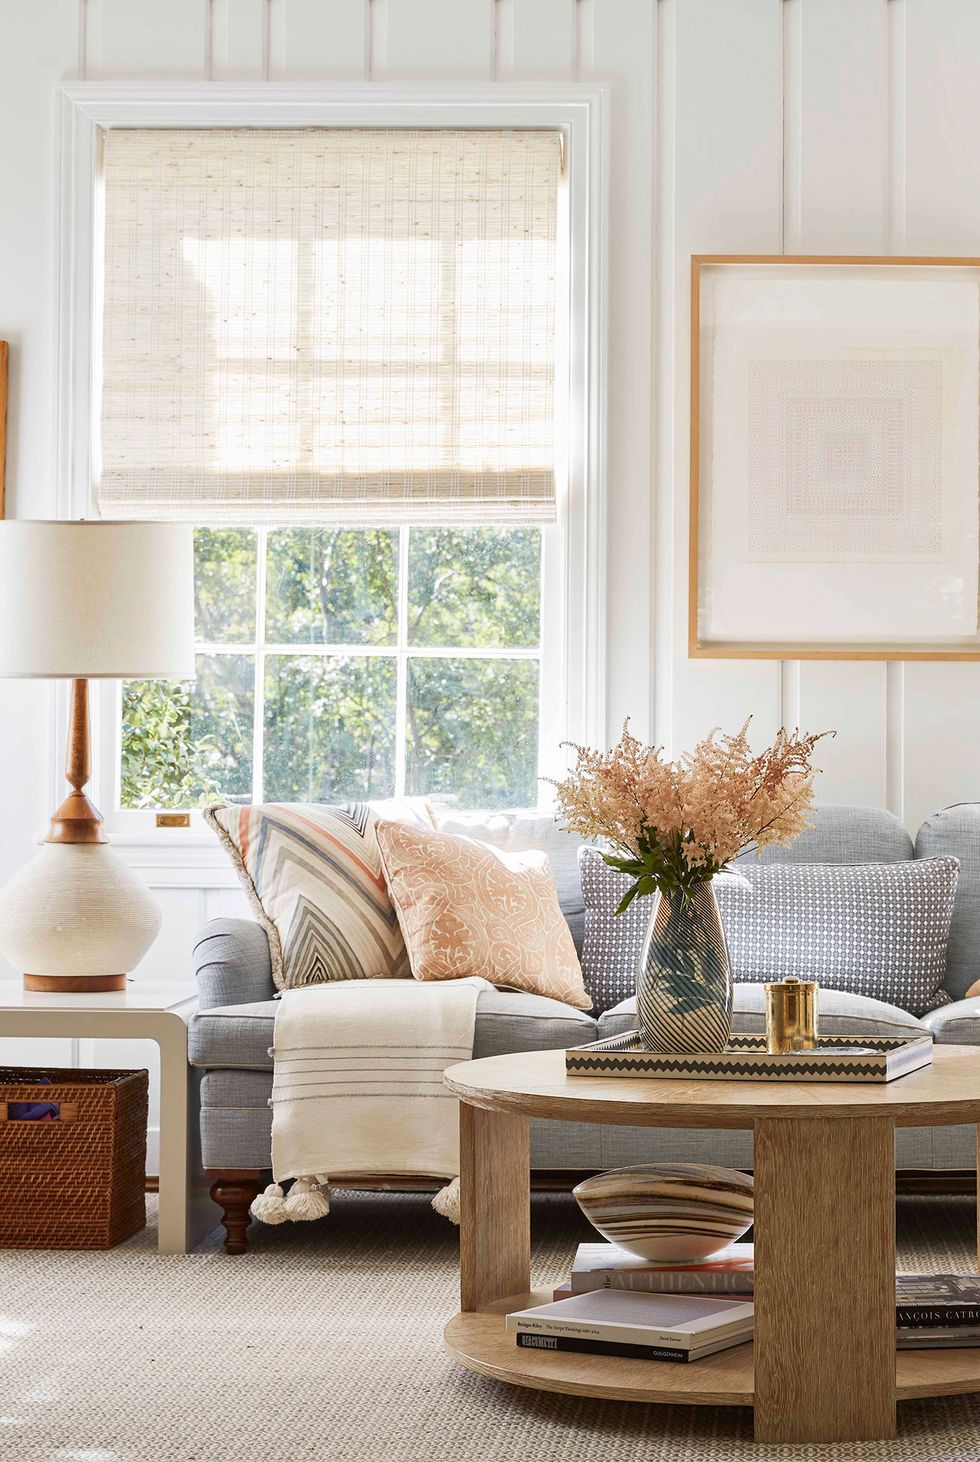 hình ảnh một góc phòng khách nhỏ với sofa ghi xám, gối tựa êm ái, khung cửa sổ kính lớn cho phép ánh sáng tự nhiên ngập tràn không gian phòng